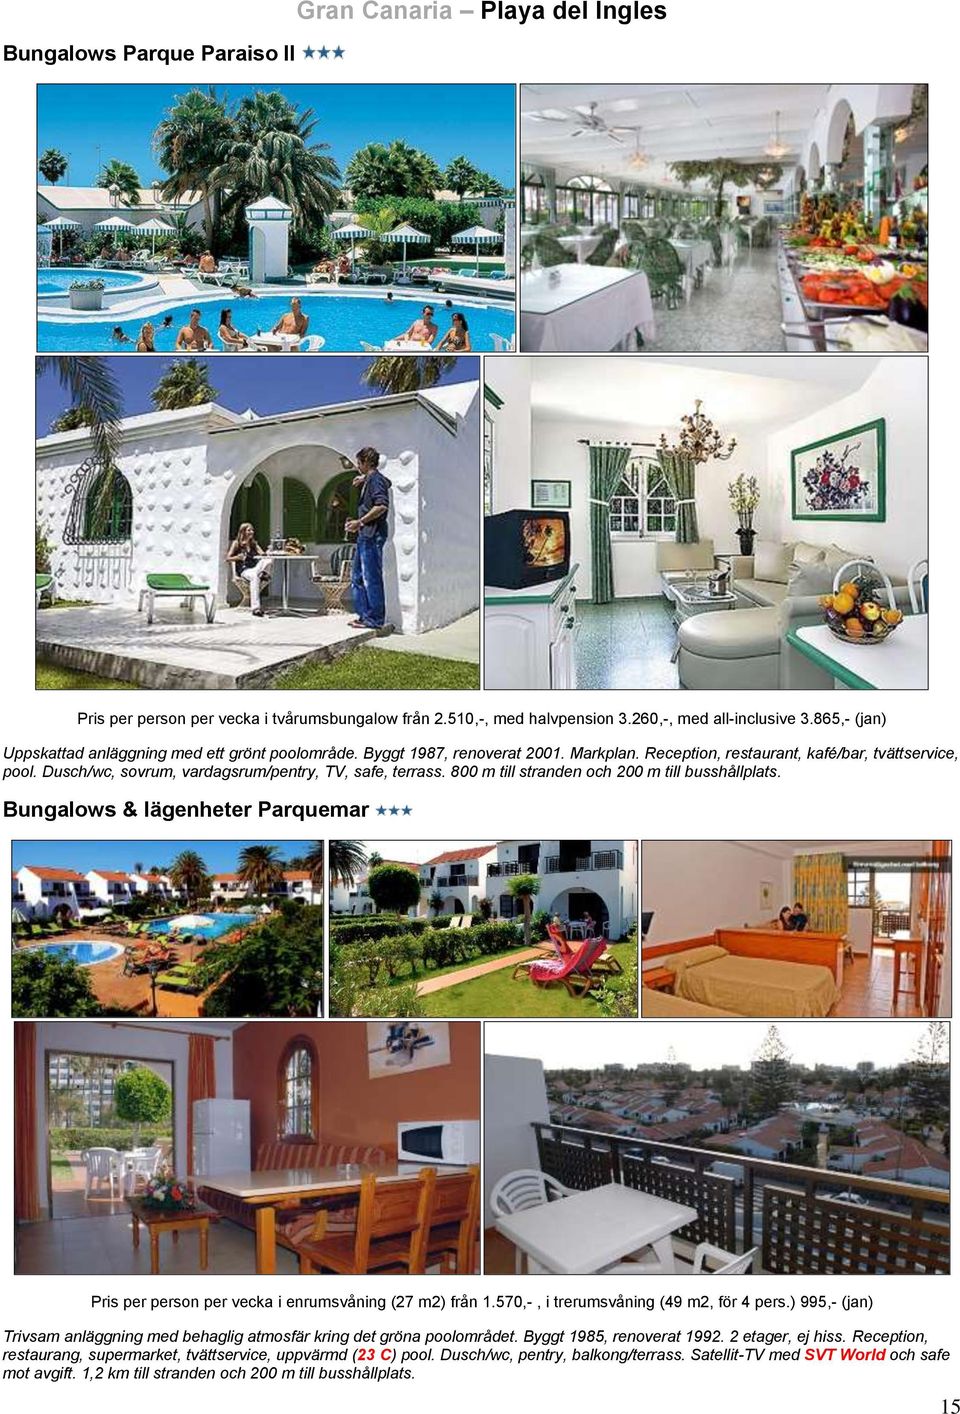 Dusch/wc, sovrum, vardagsrum/pentry, TV, safe, terrass. 800 m till stranden och 200 m till busshållplats. Bungalows & lägenheter Parquemar Pris per person per vecka i enrumsvåning (27 m2) från 1.